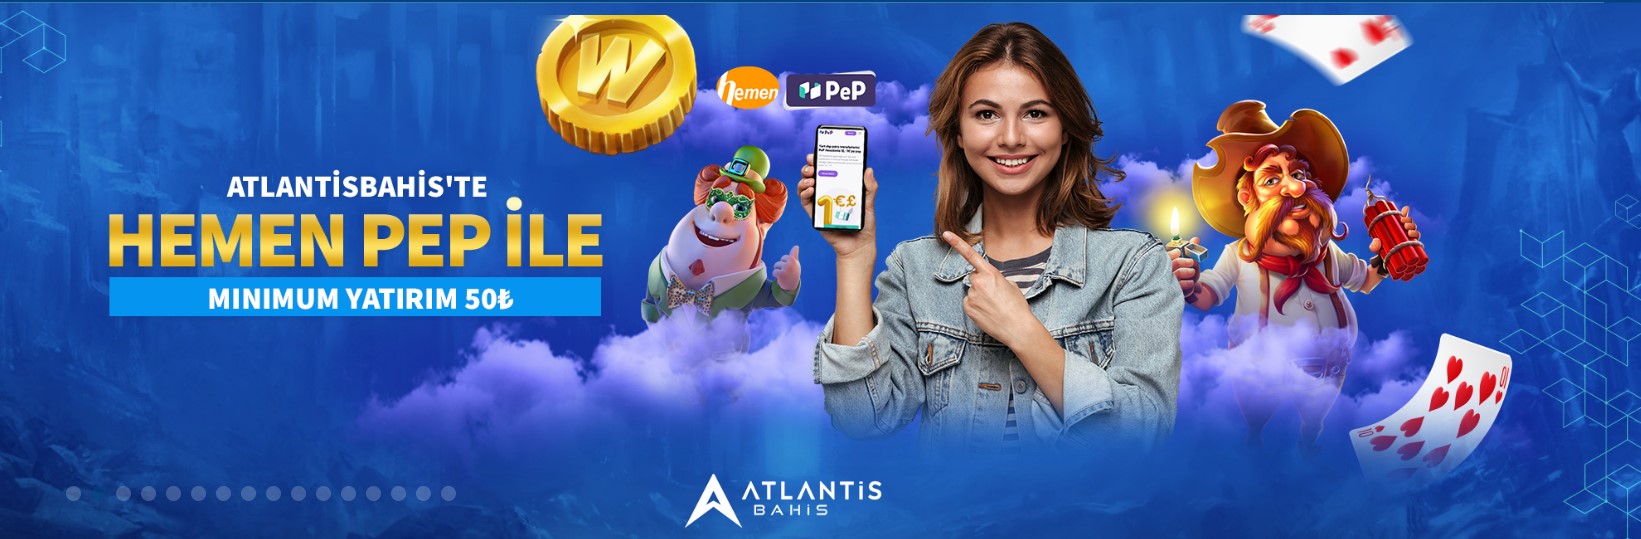 Atlantisbahis kesintisiz tv adresi sahiptir. Mobil programı cep telefonlarına indiren üyeler Atlantisbahis web sitesini ziyaret ederler.